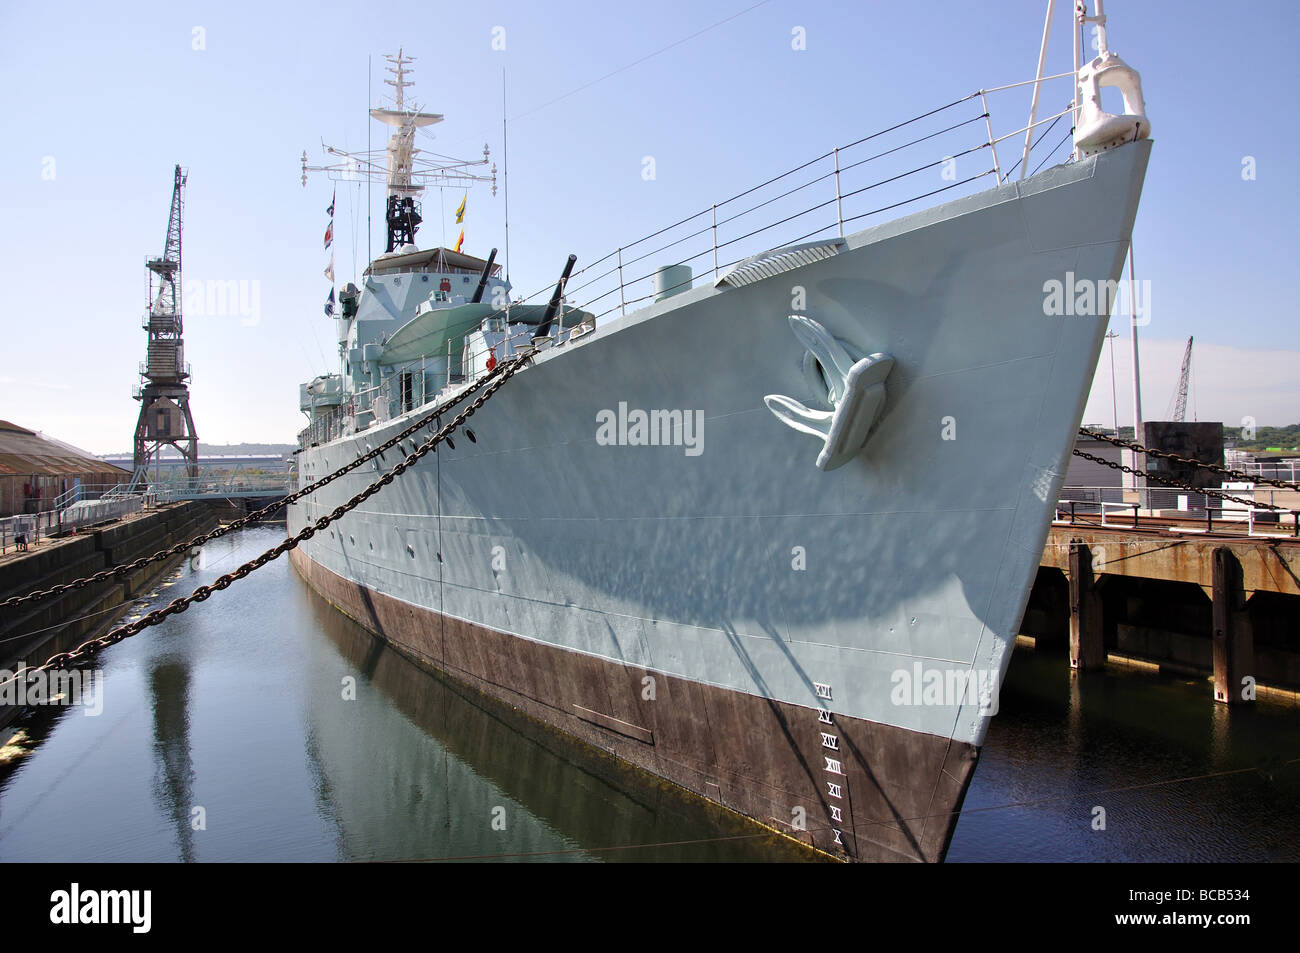 Le HMS Cavalier cuirassé, Cran-gevrier, Chatham, Kent, Angleterre, Royaume-Uni Banque D'Images